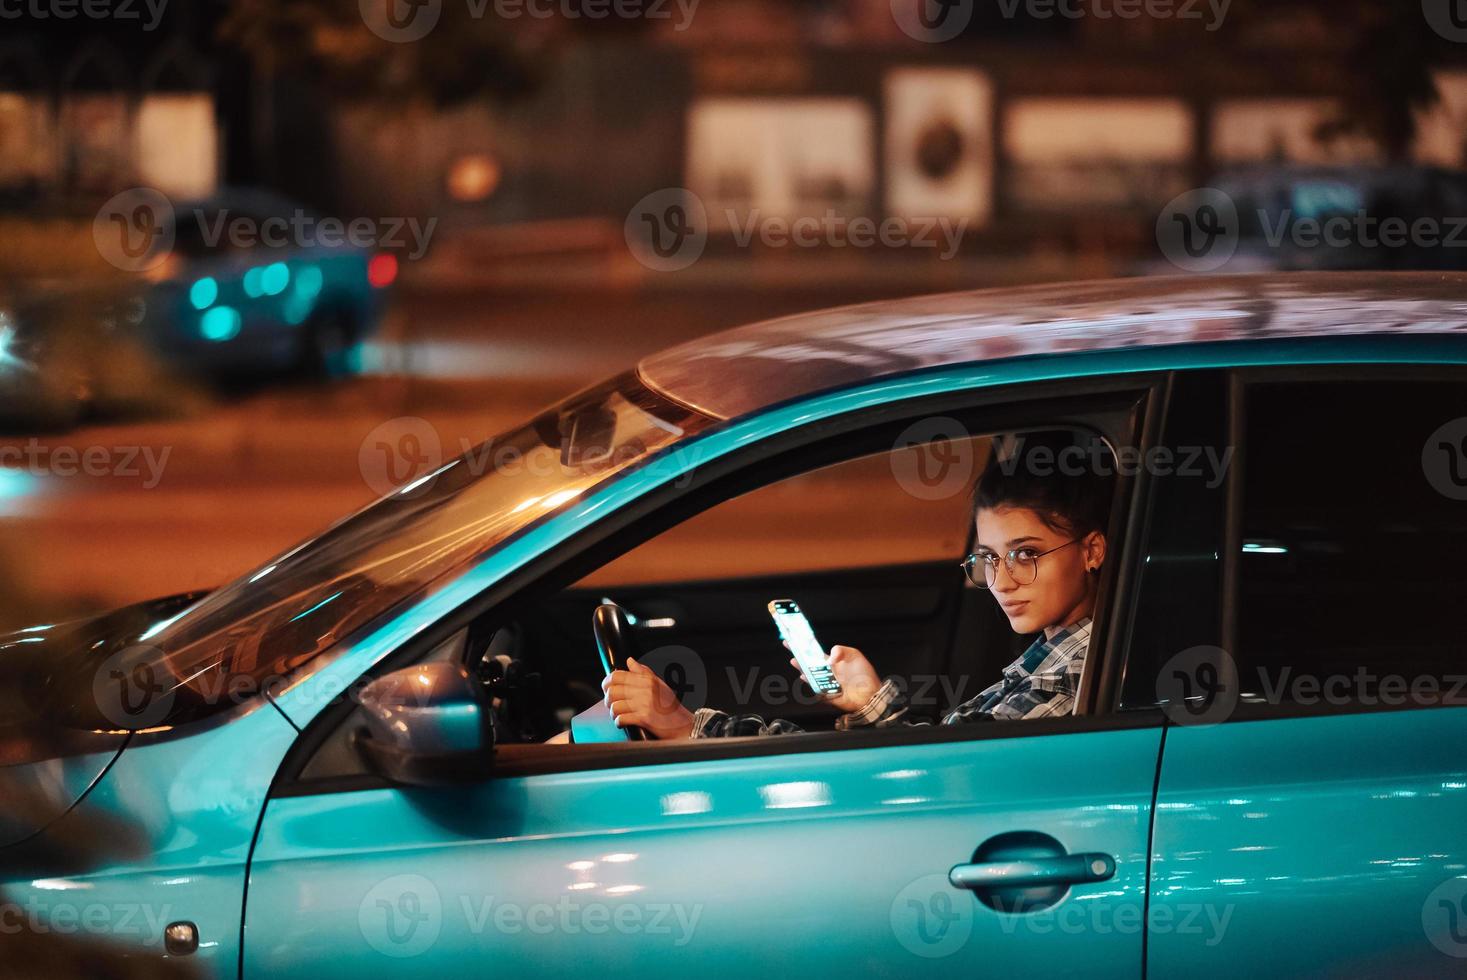 motorista feminina perdida usando telefone celular enquanto dirigia à noite. foto